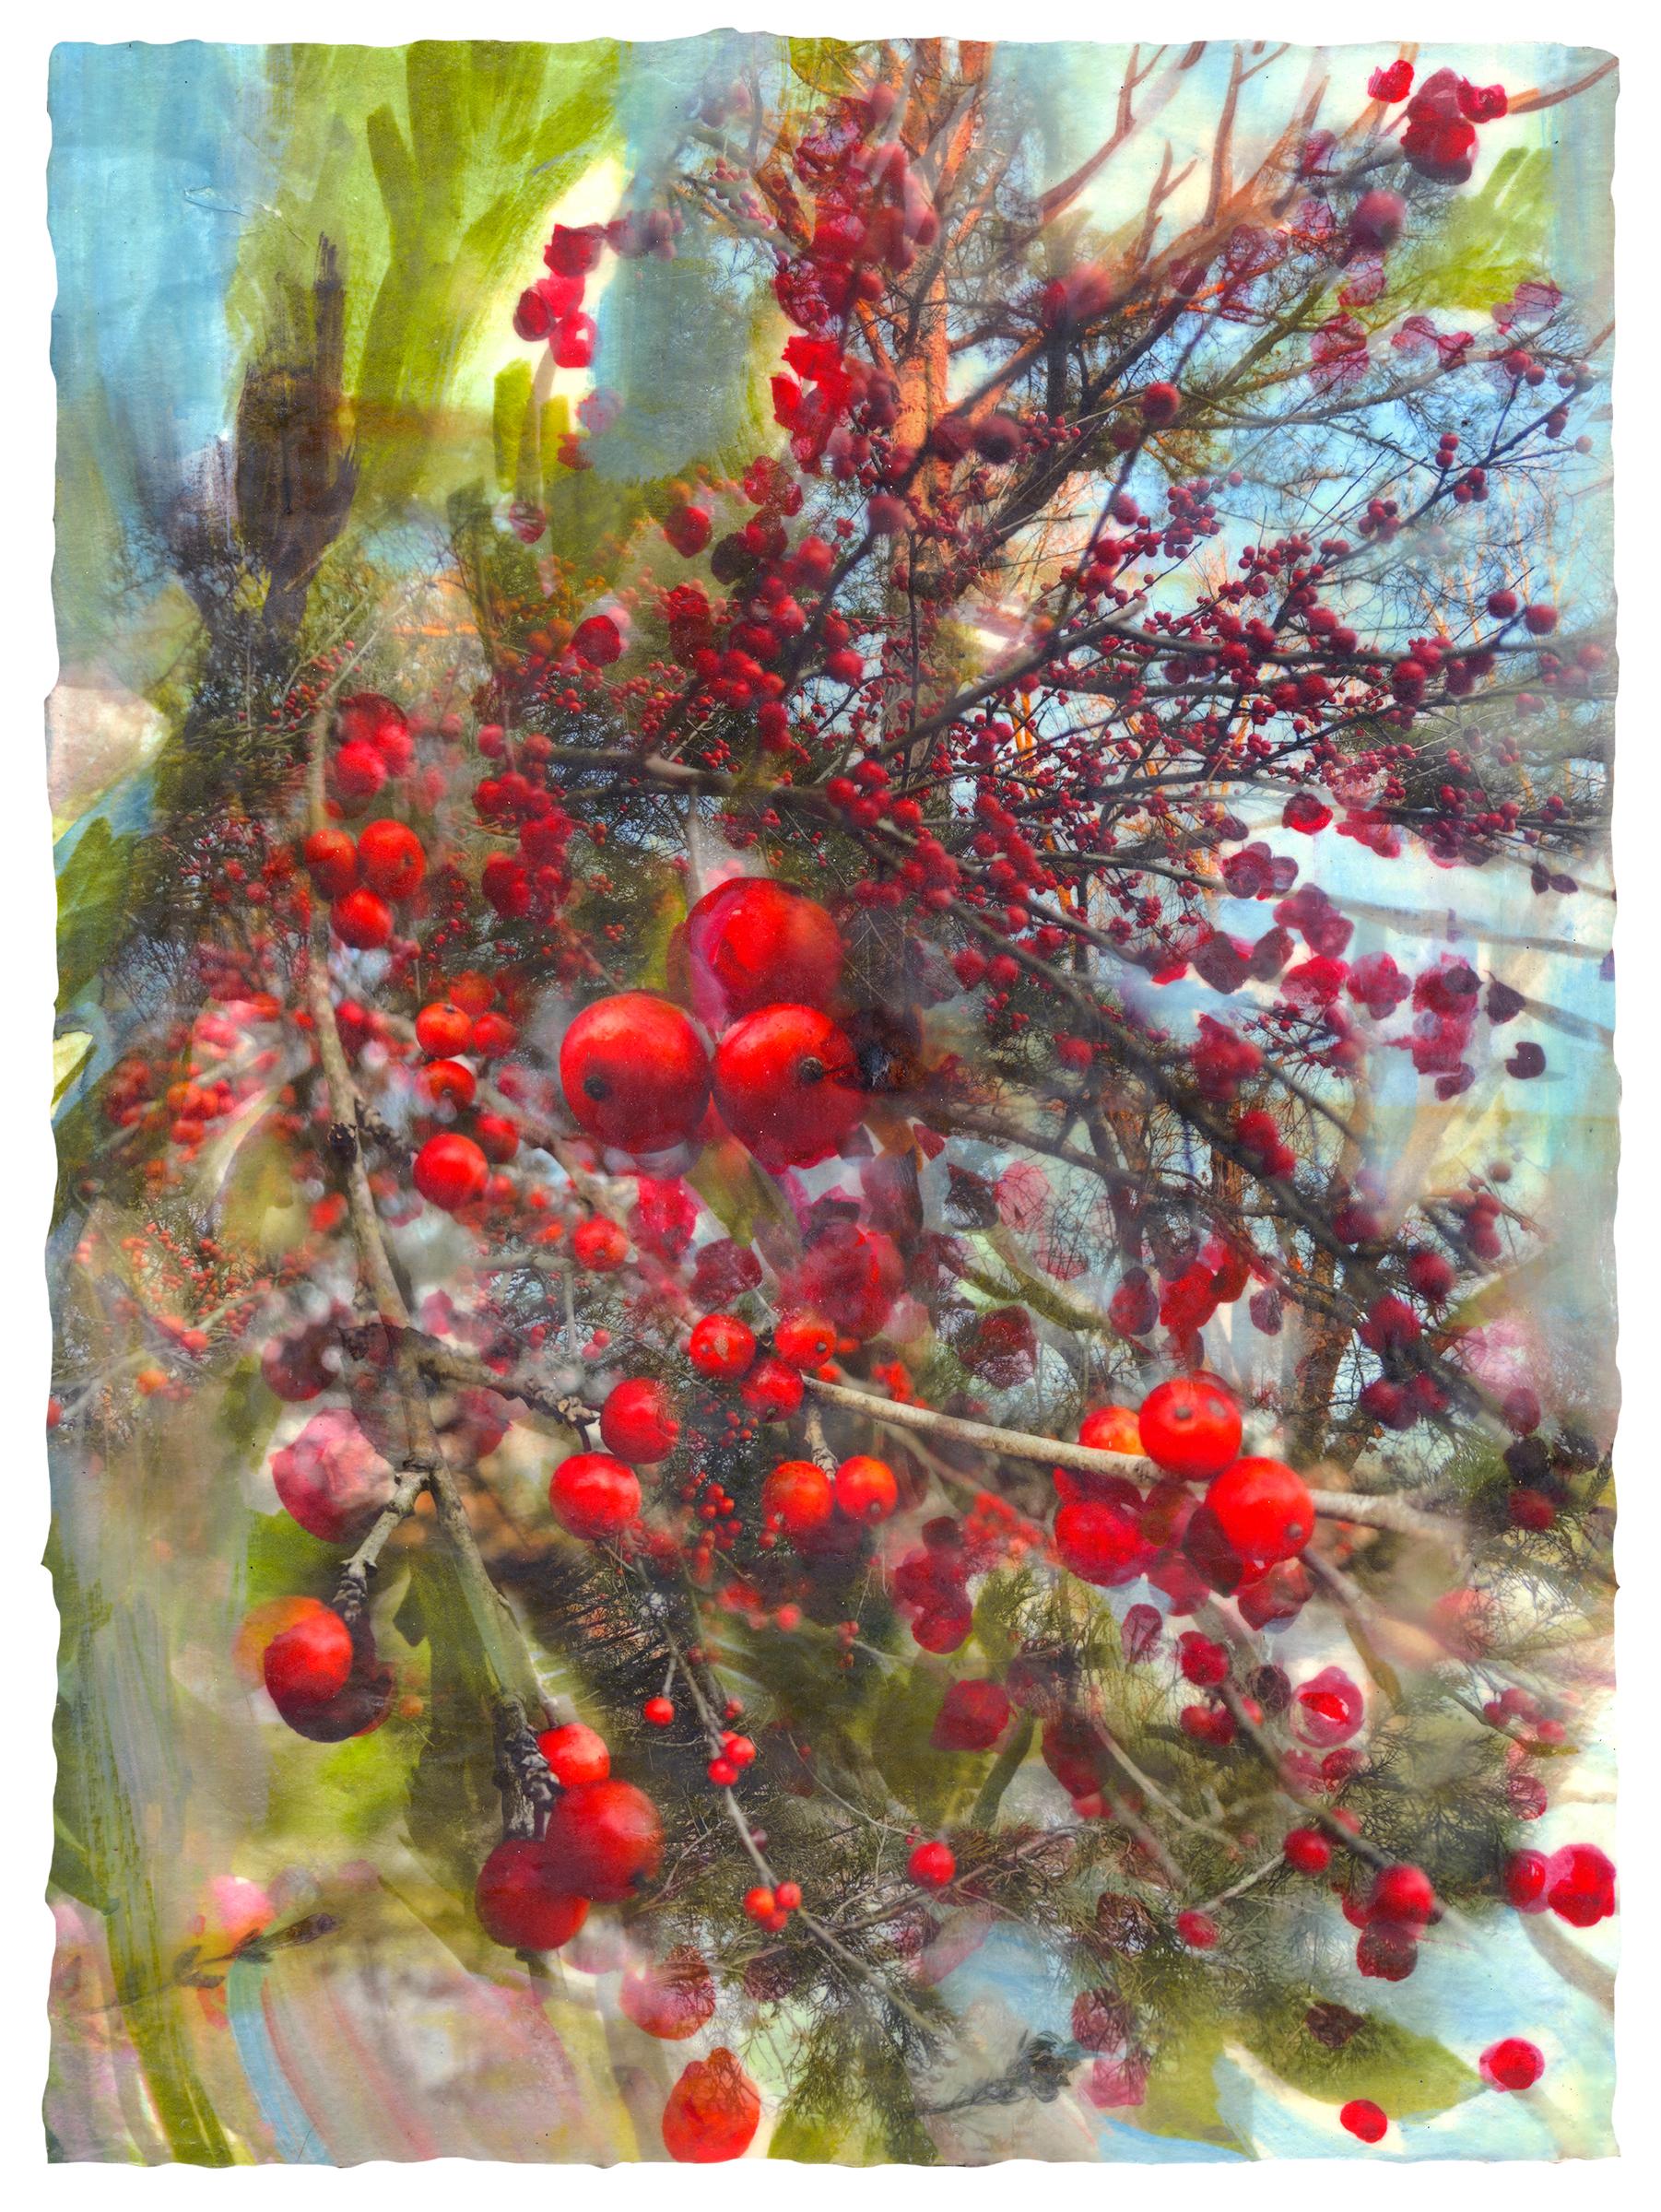 Melissa Cowper-Smith Landscape Painting - "Forgiven (Berries)" encaustic, gouache, pigment print, dried leaves on panel